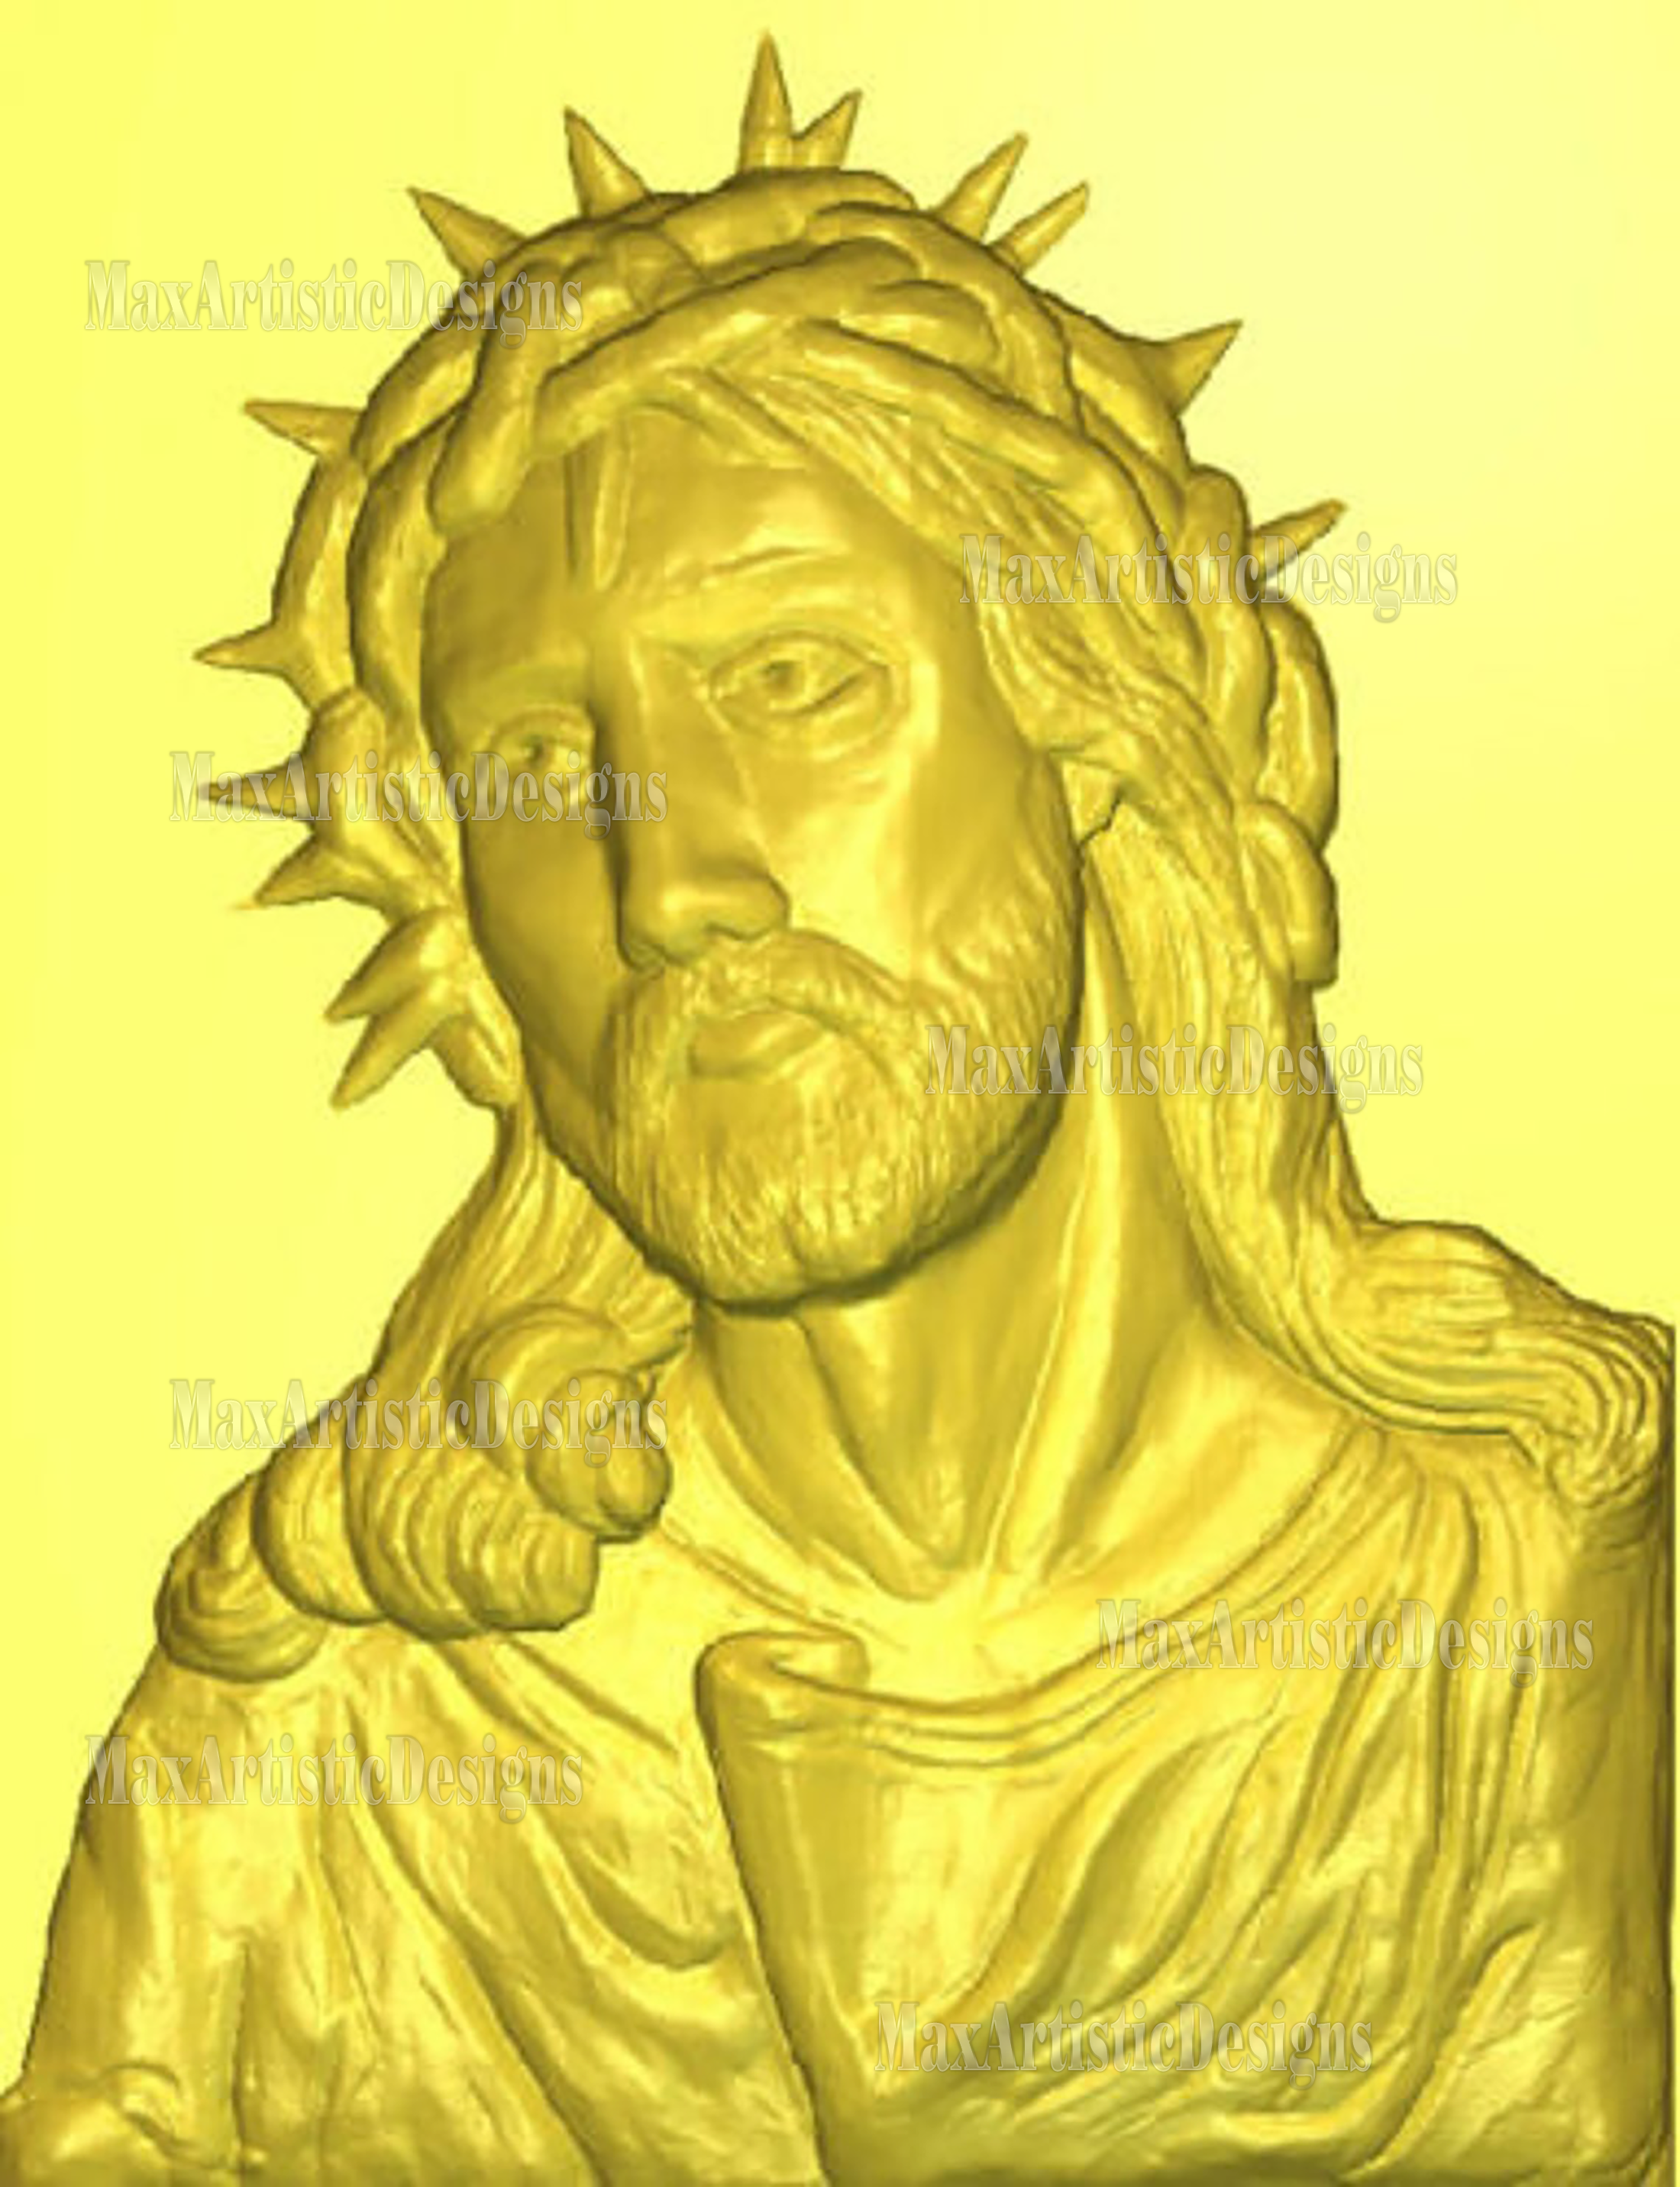 religious vectors christ 4 pieces 3d stl models for cnc router printer artcam aspire